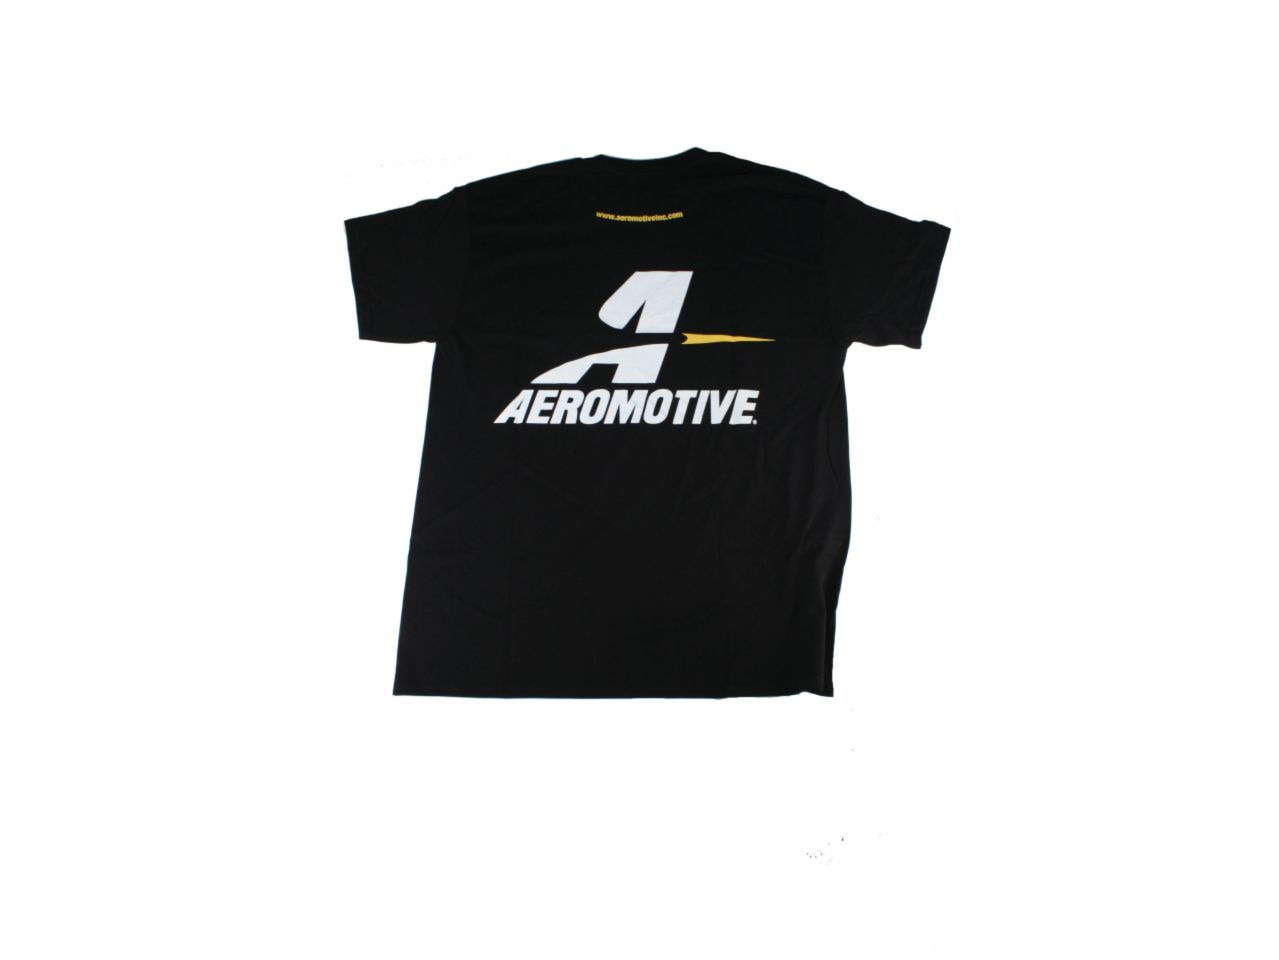 Aeromotive Shirts 91017 Item Image